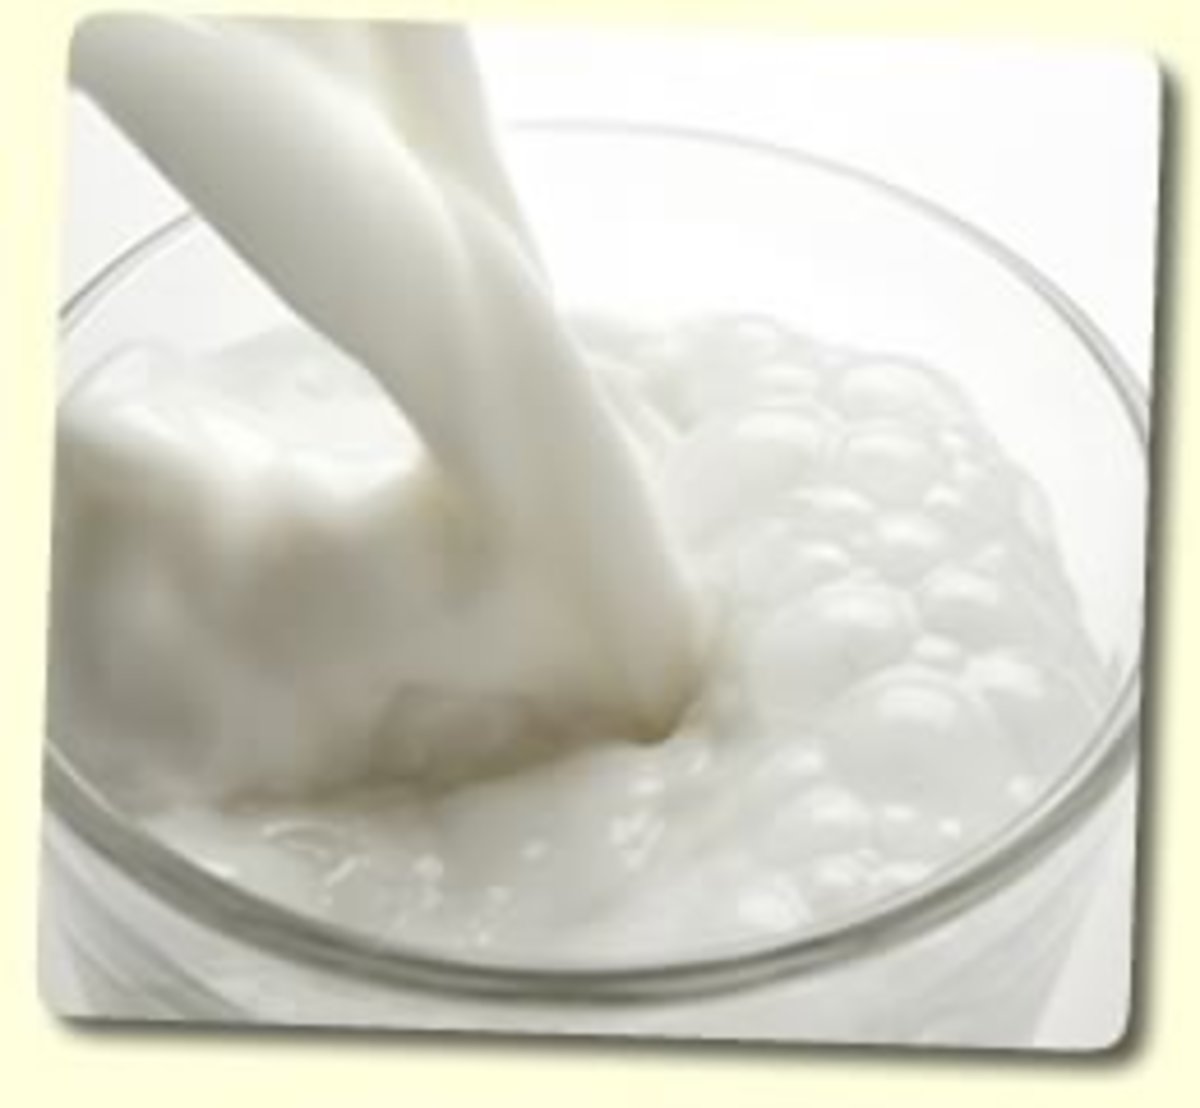 Cultured milk